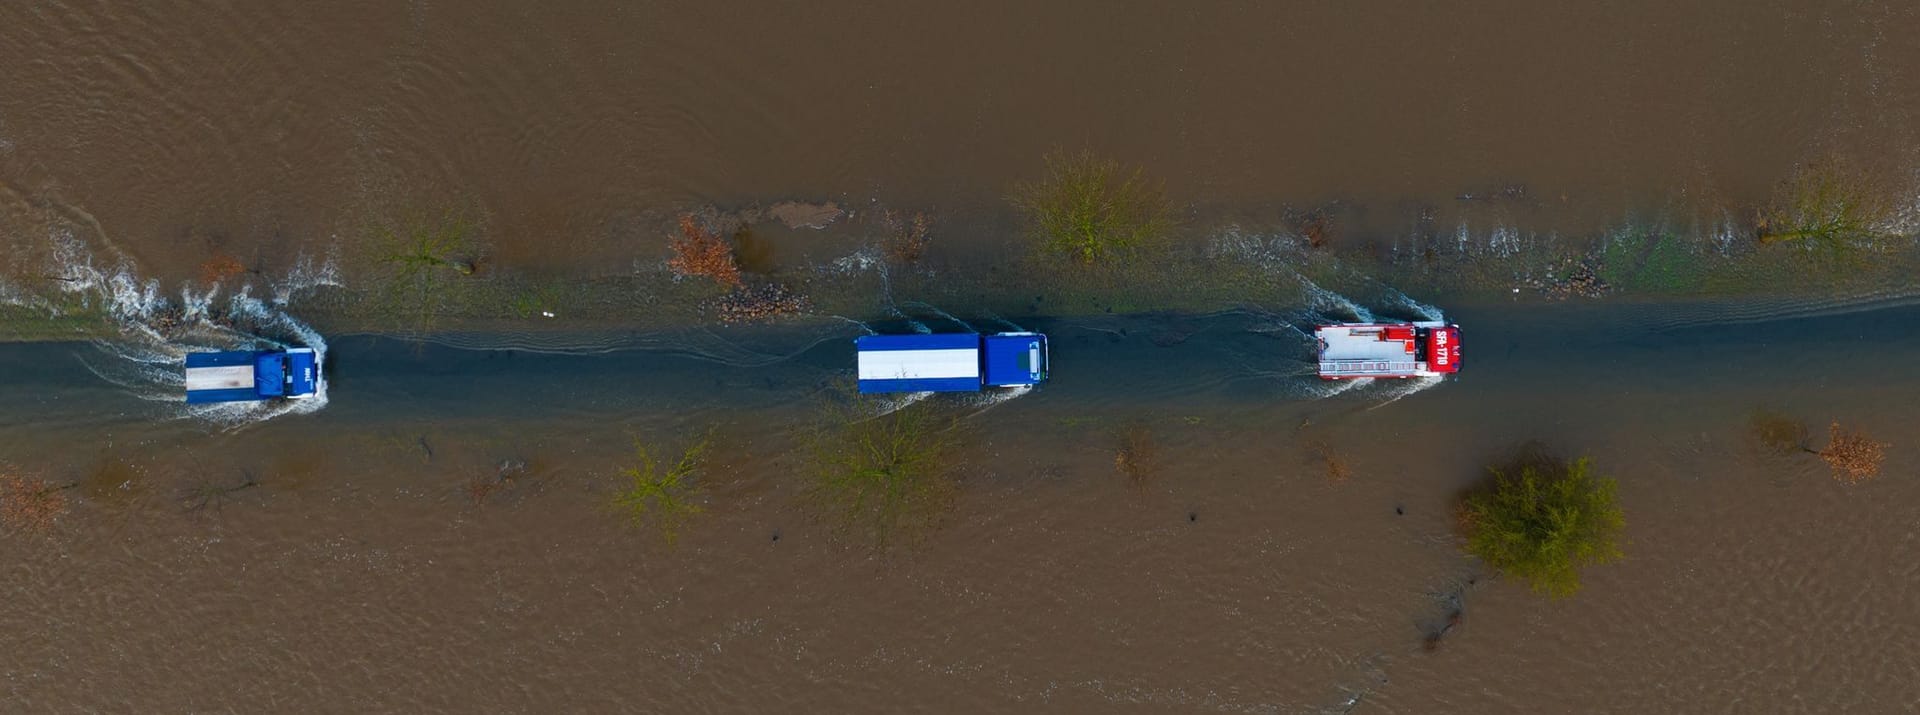 Ein Fahrzeug vom THW sowie der Feuerwehr fahren auf einer teilweise überfluteten Straße unweit der Aller (Aufnahme mit einer Drohne).